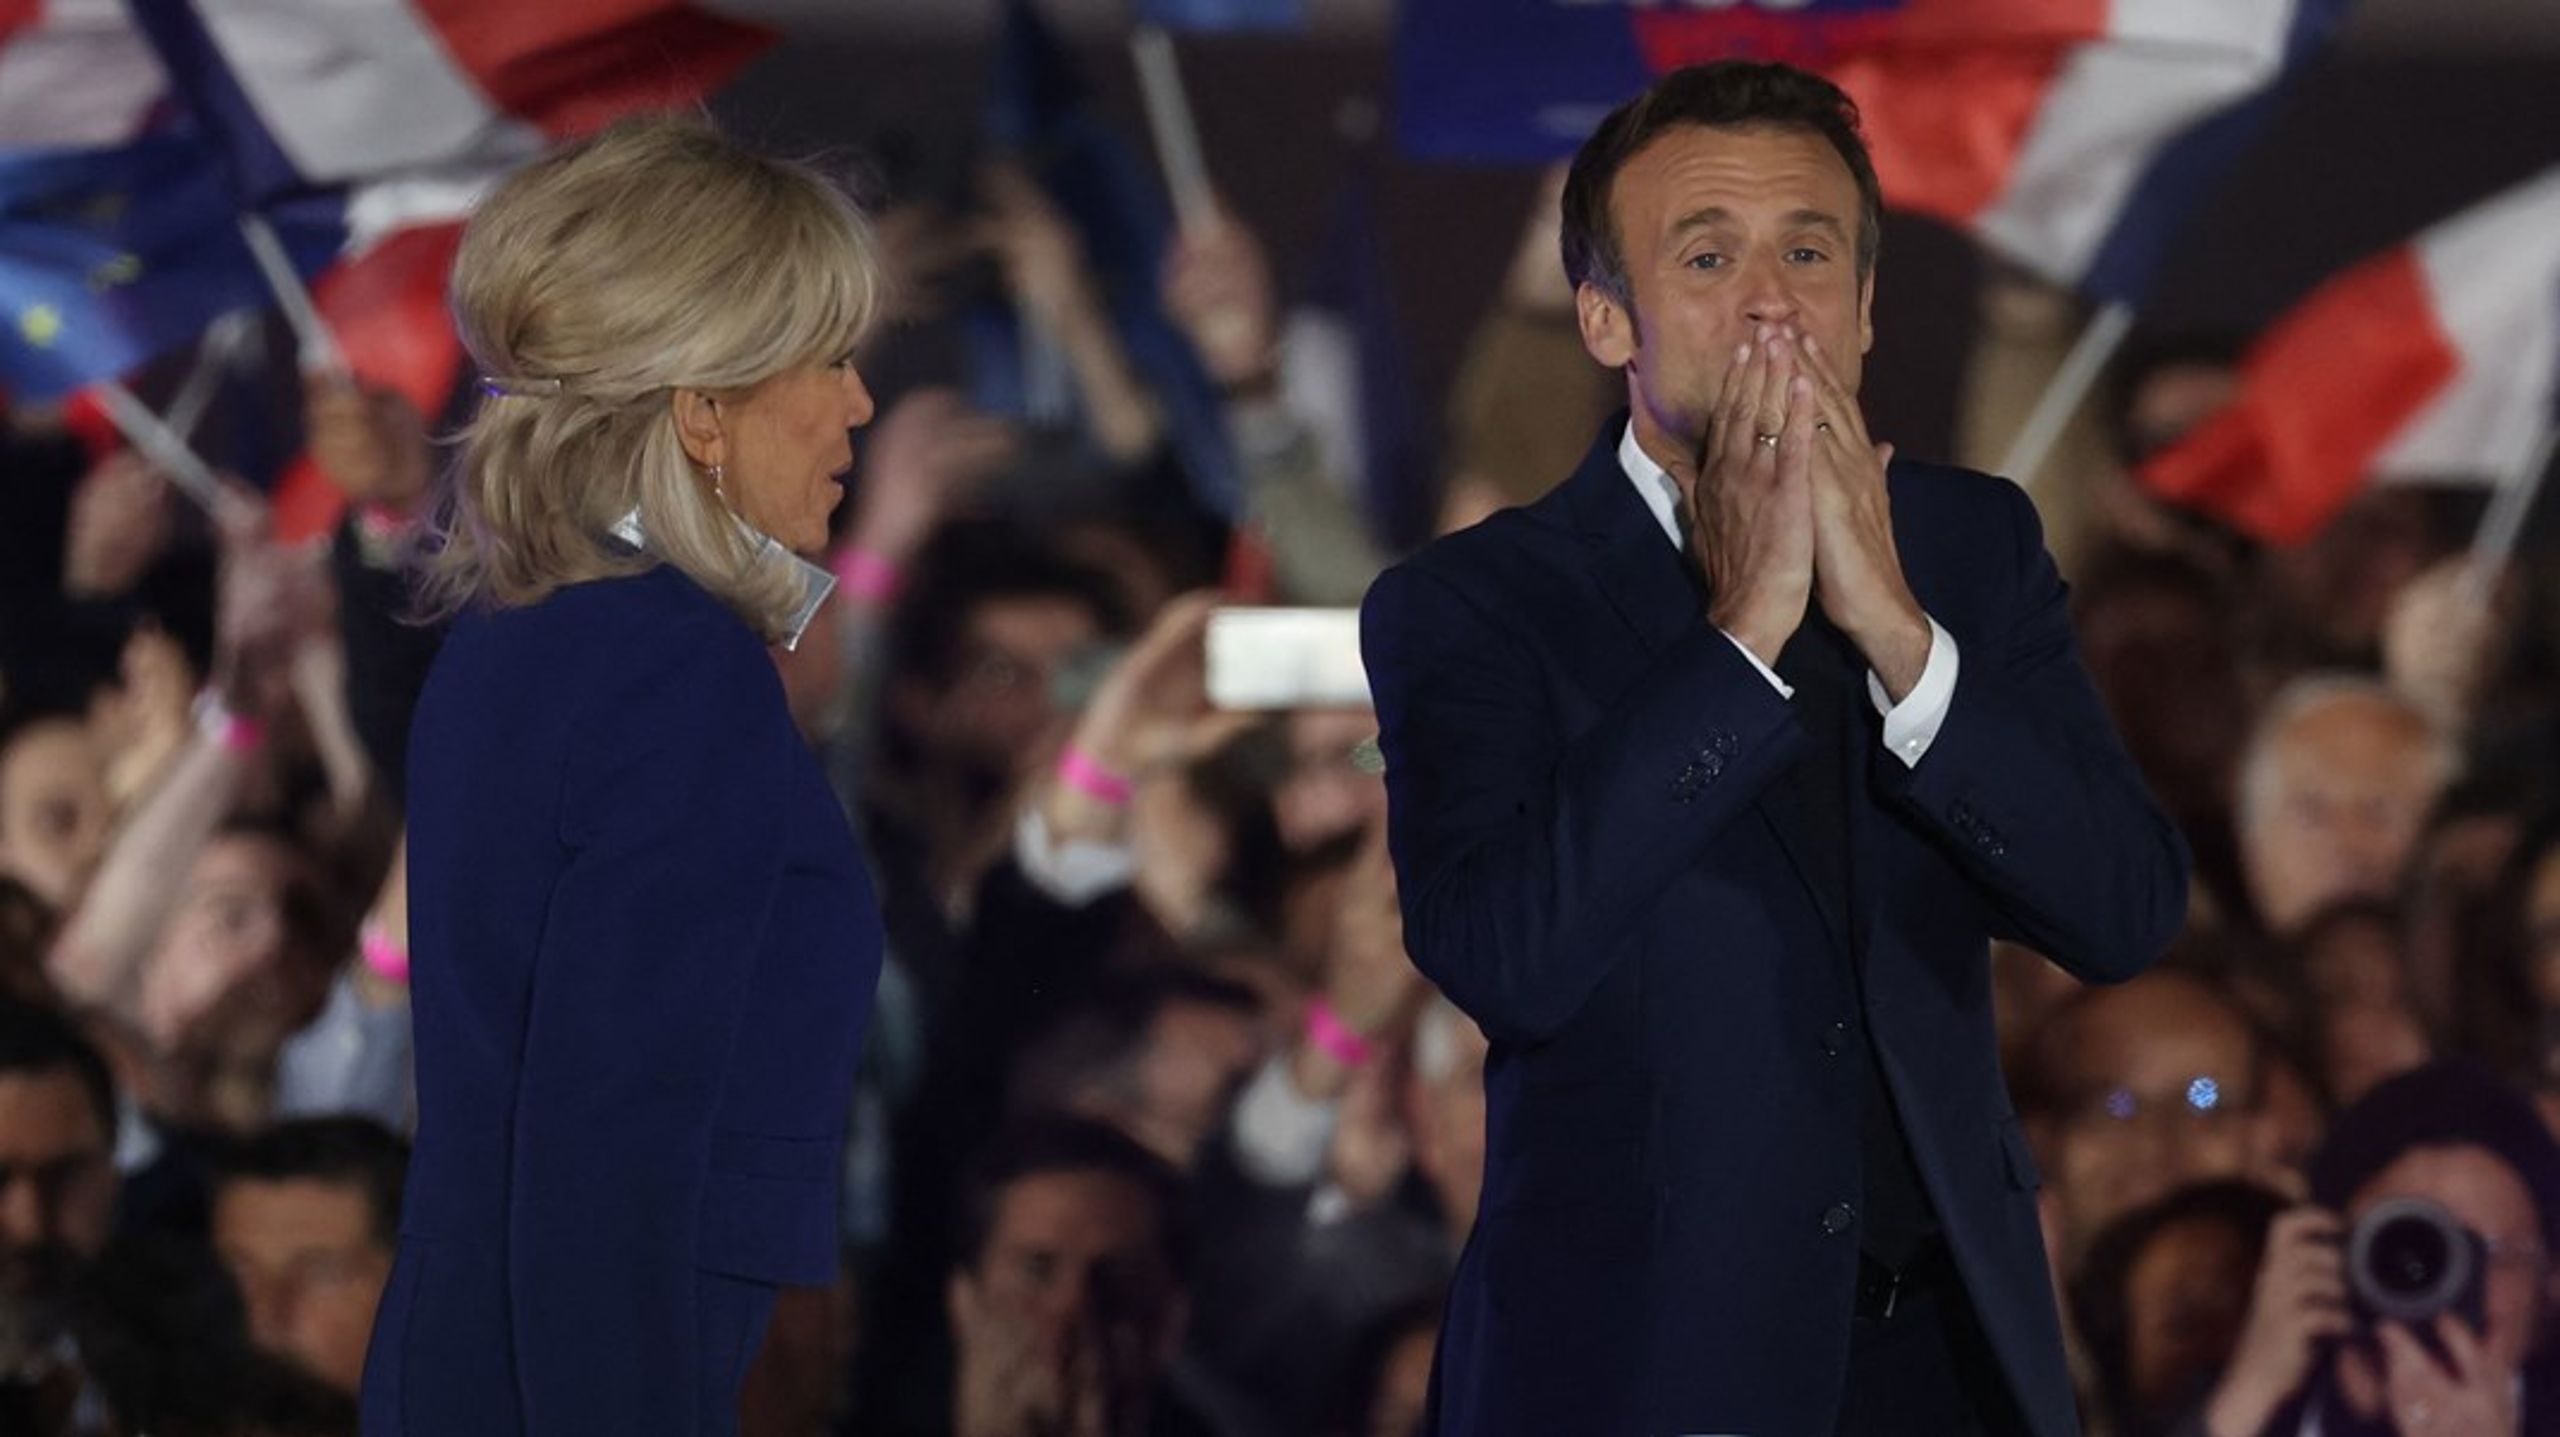 Emmanuel Macron sikrede sig en sejr over Marine Le Pen og bliver dermed den første præsident i to årtier til at blive genvalgt.